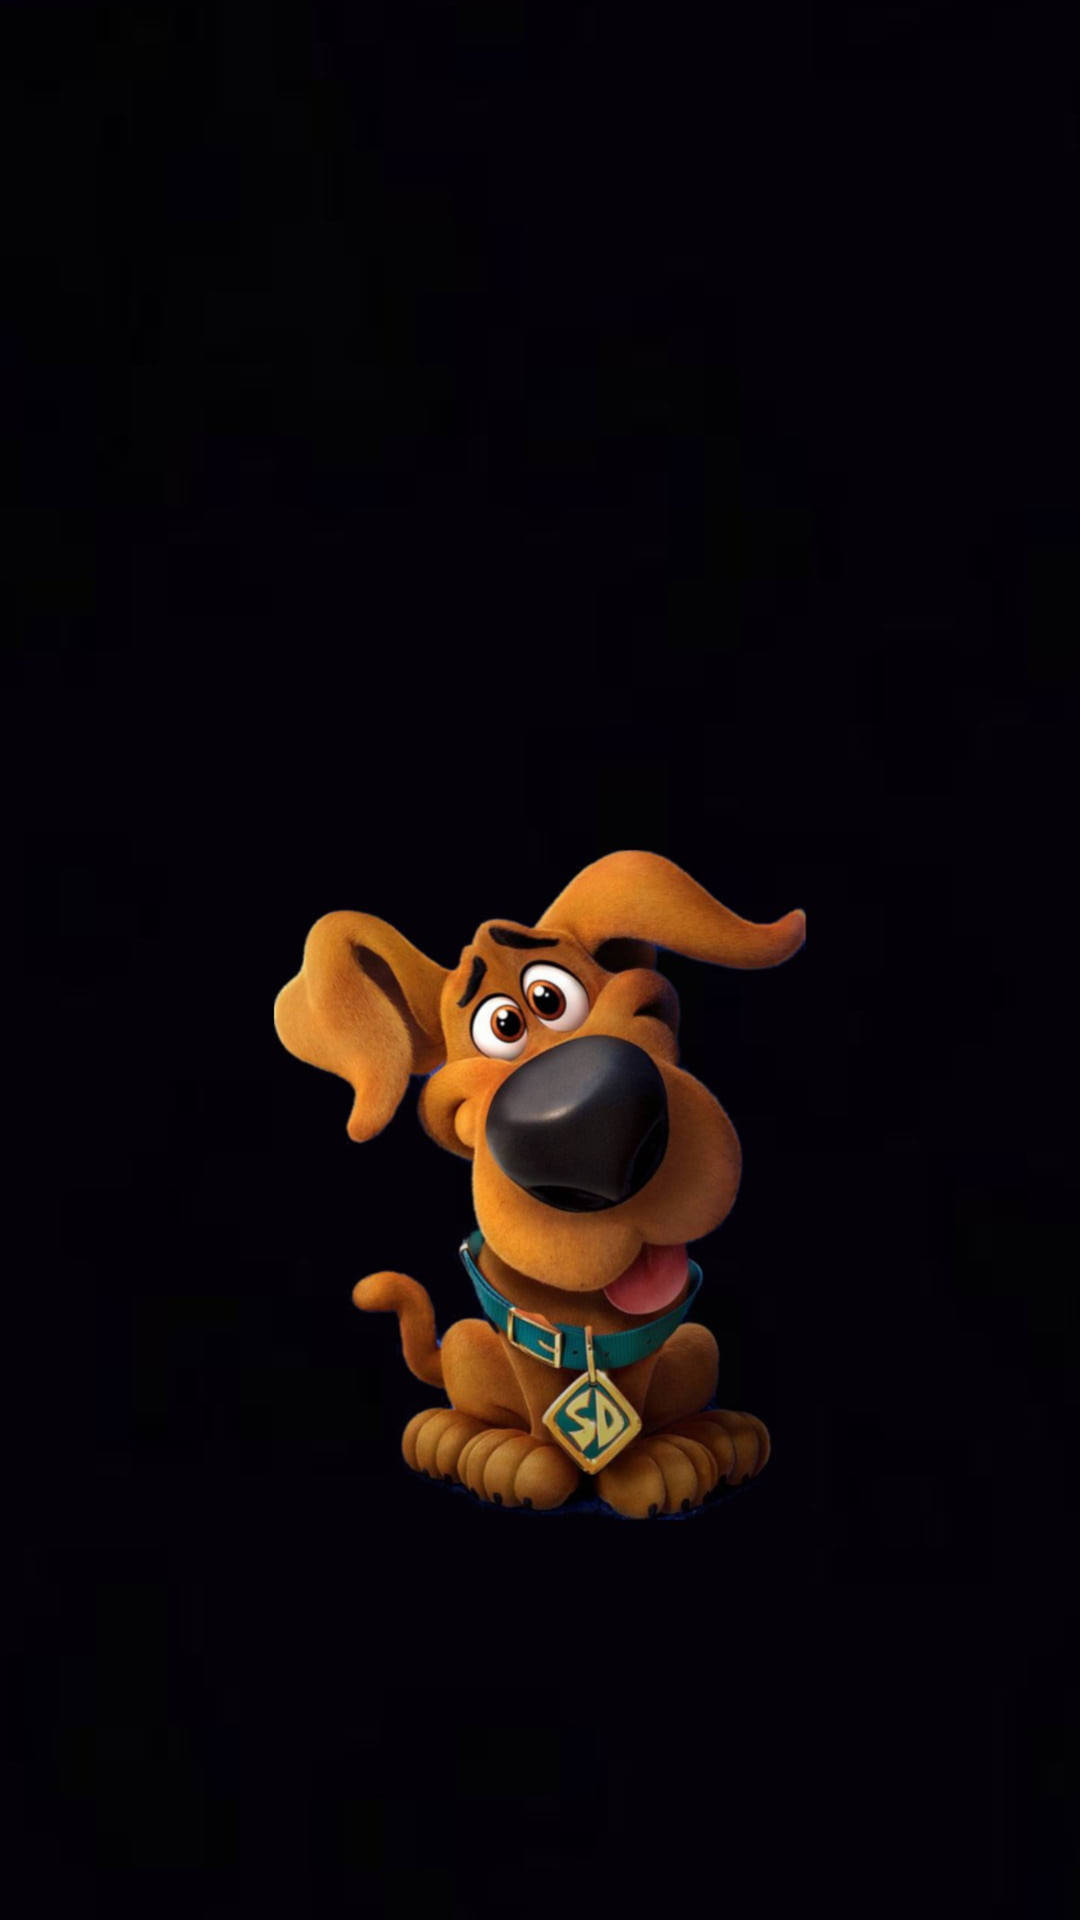 Scooby Doo cartoon dog HD phone wallpaper  Peakpx